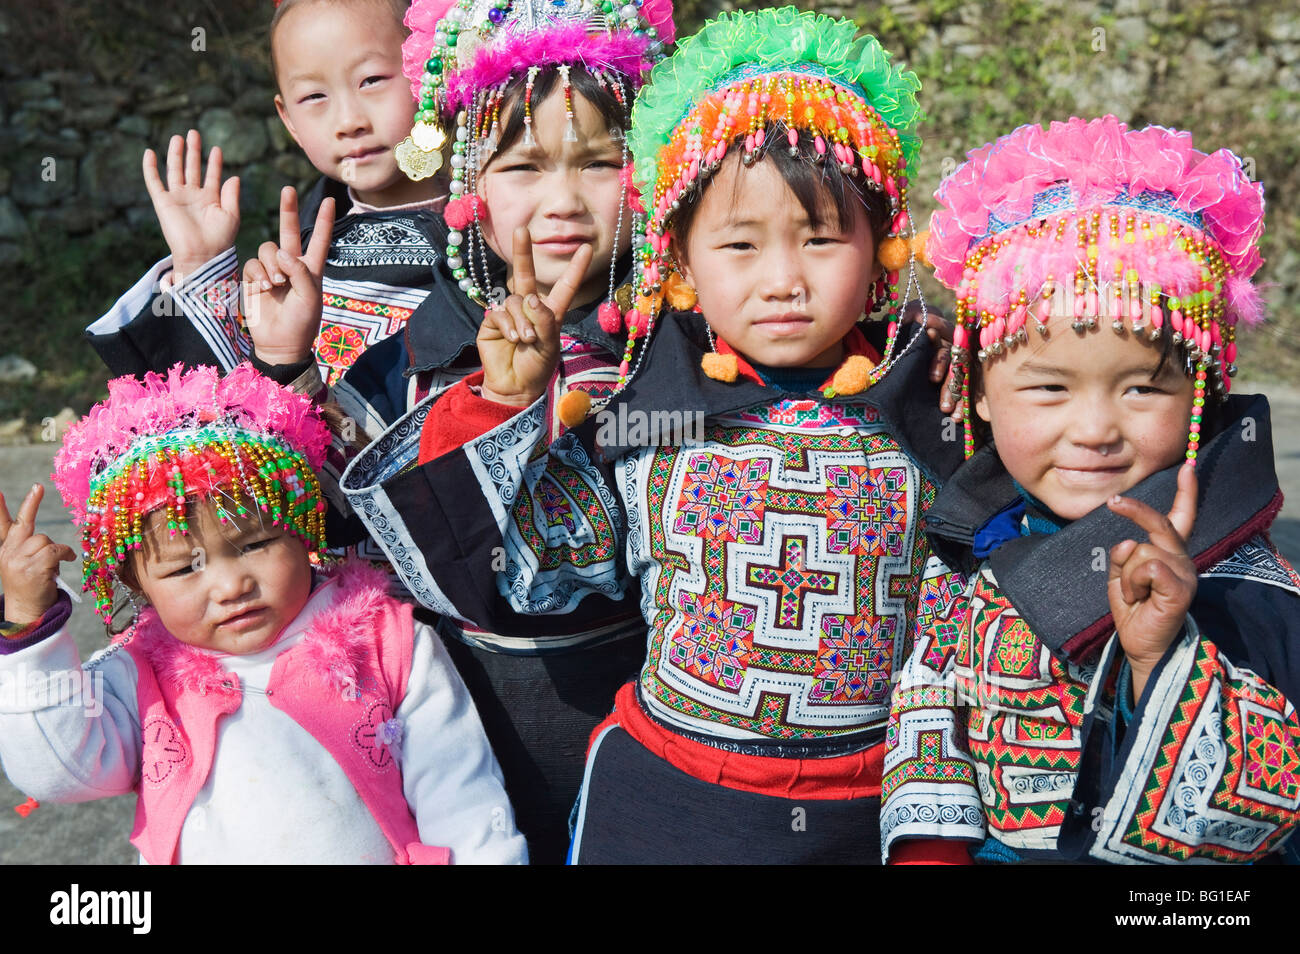 Mädchen in ethnischen Kostüm zu einer 4 Dichtungen Miao lunar New Year, Xinyao Festivalstadt, Provinz Guizhou, China, Asien Stockfoto